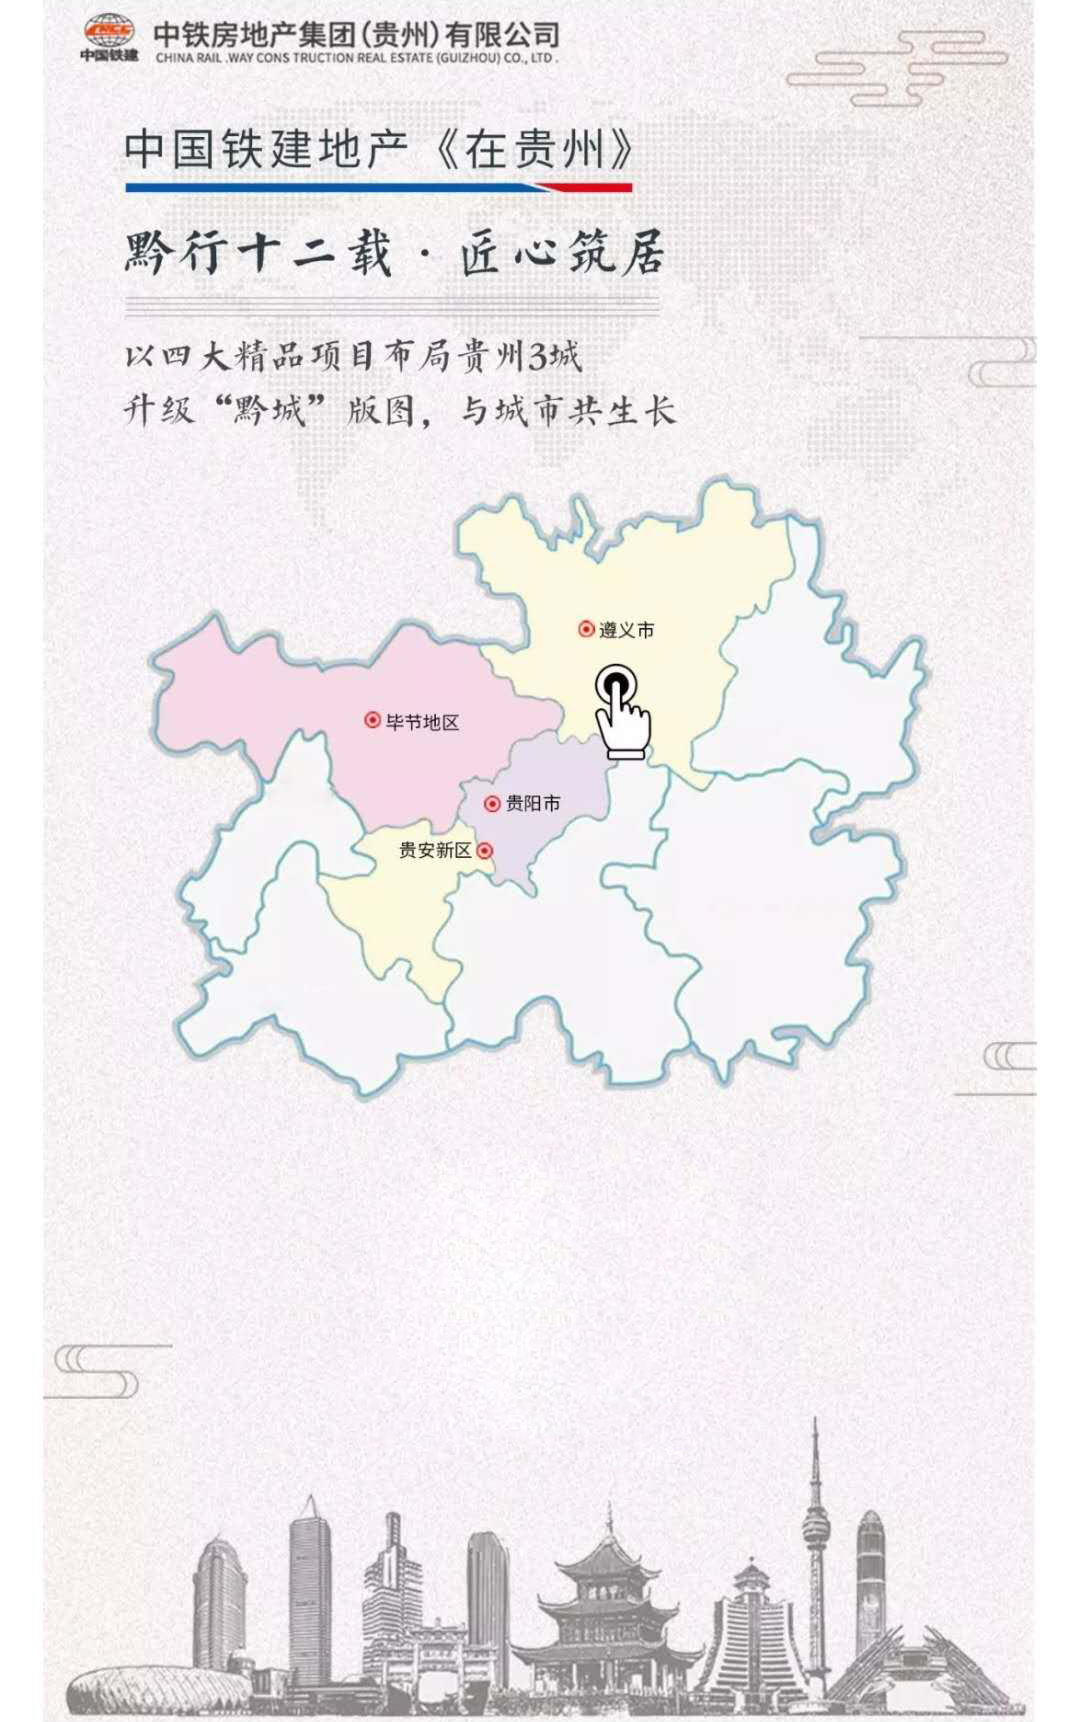 中国铁建地产 | 黔行十二年匠心筑居 3城布局升级黔城版图-中国网地产